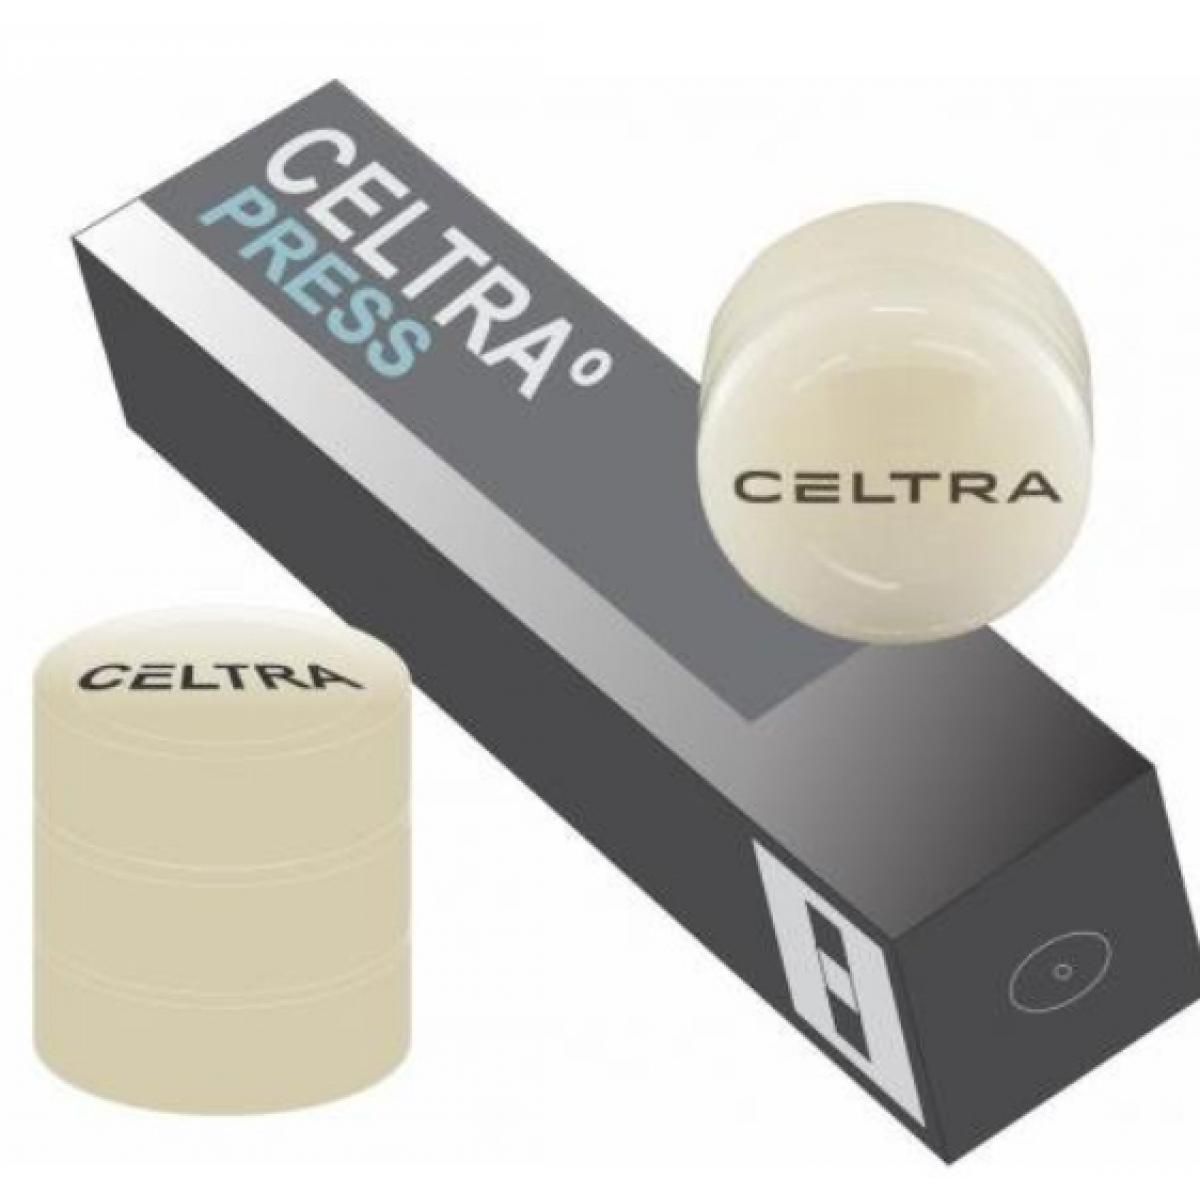 CELTRA PRESS MT D2 3 X 6 GR DENTSPLY -